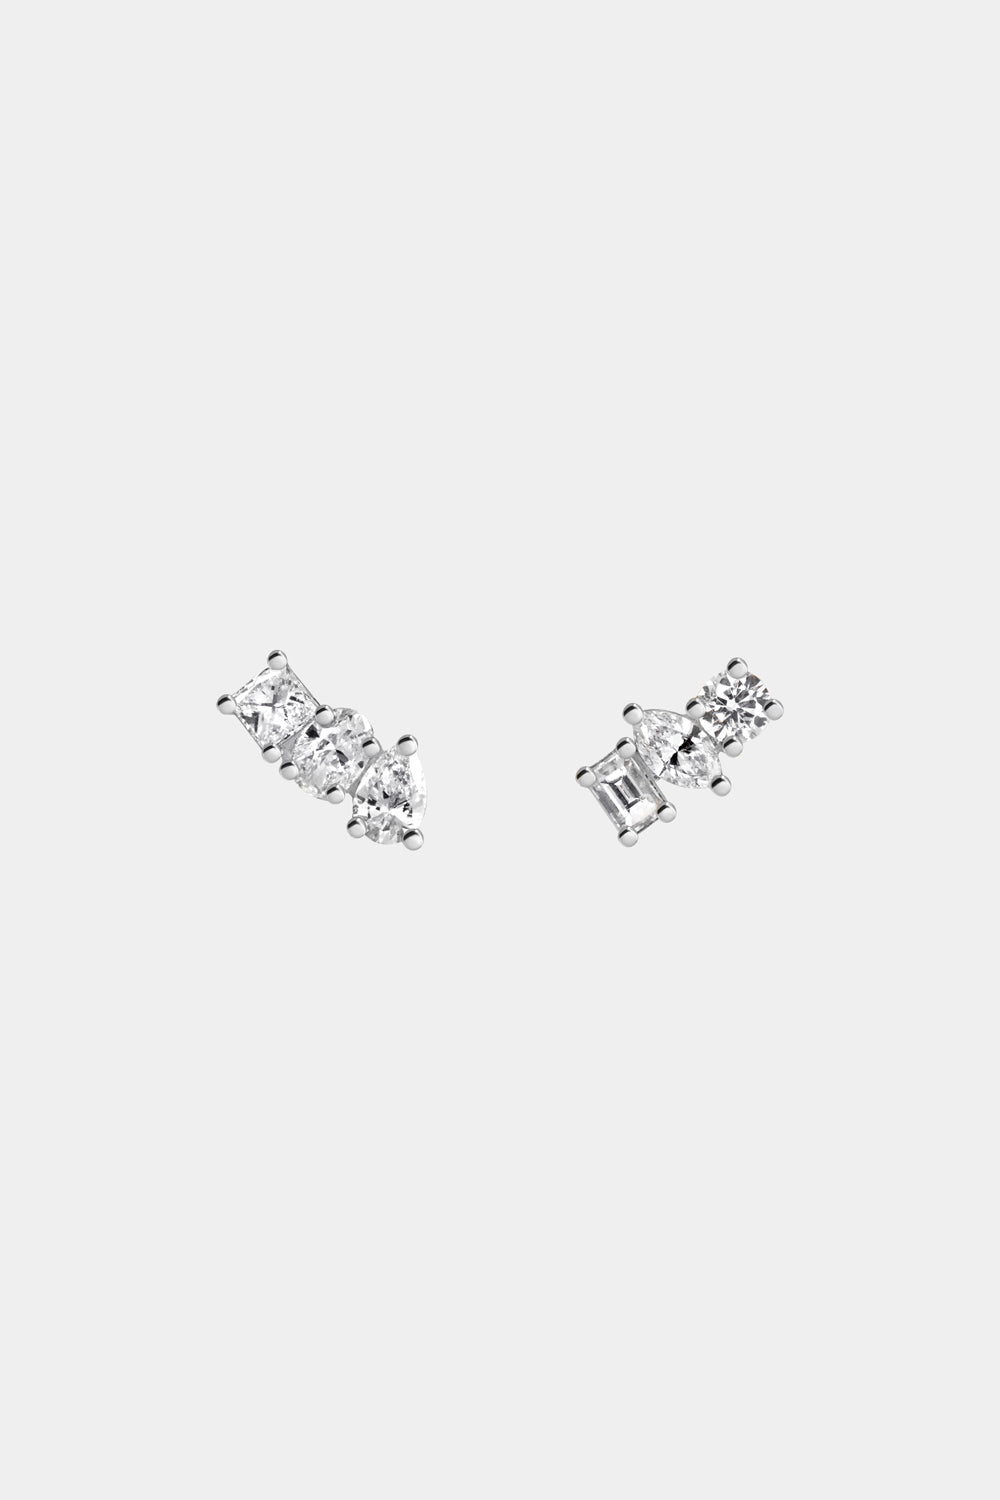 Mini Scattered Diamond Earrings | 18K White Gold